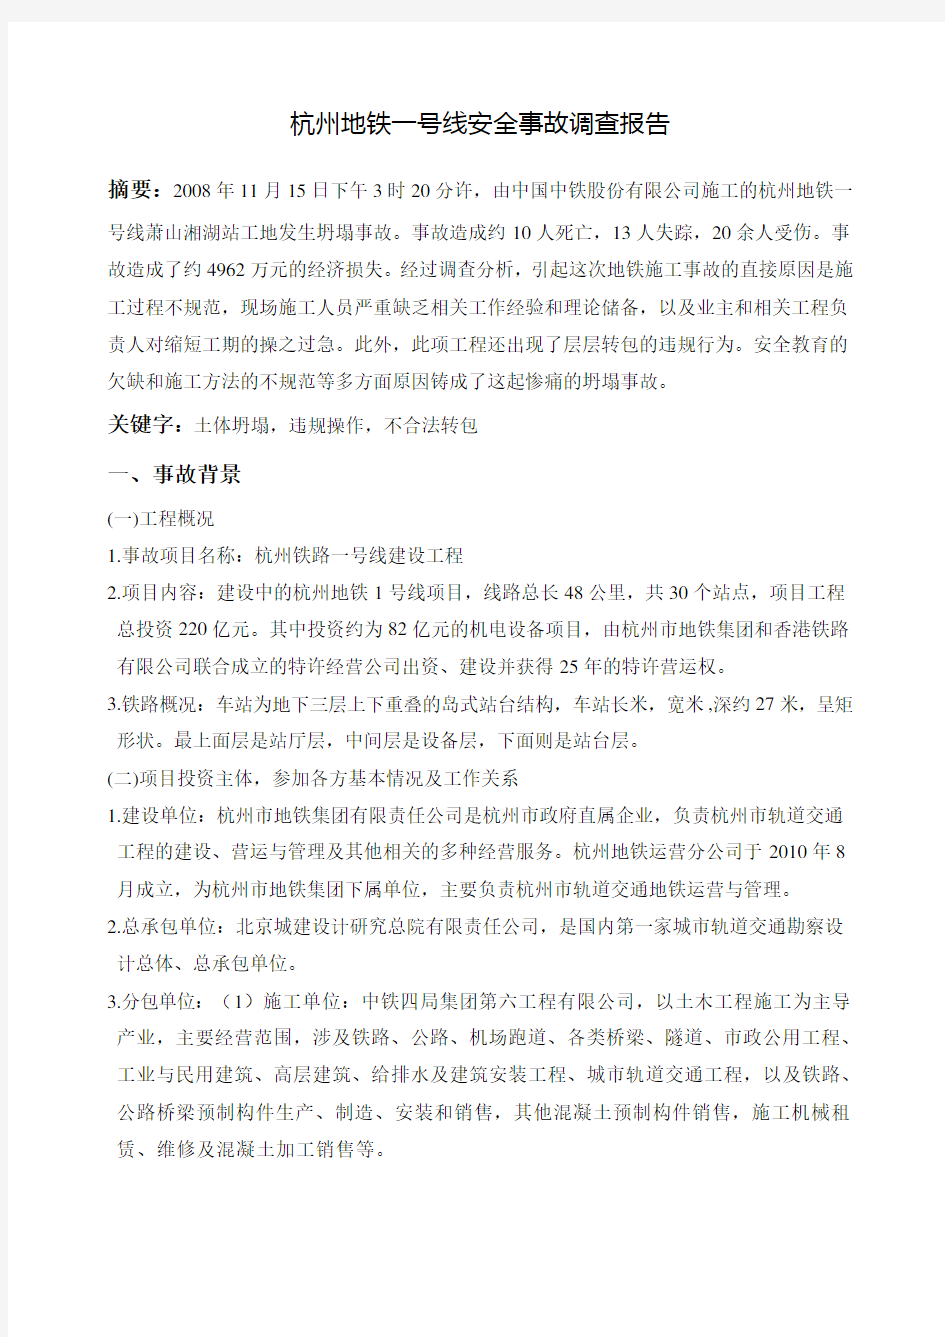 杭州地铁一号线萧山湘湖站安全事故调查报告 (1)